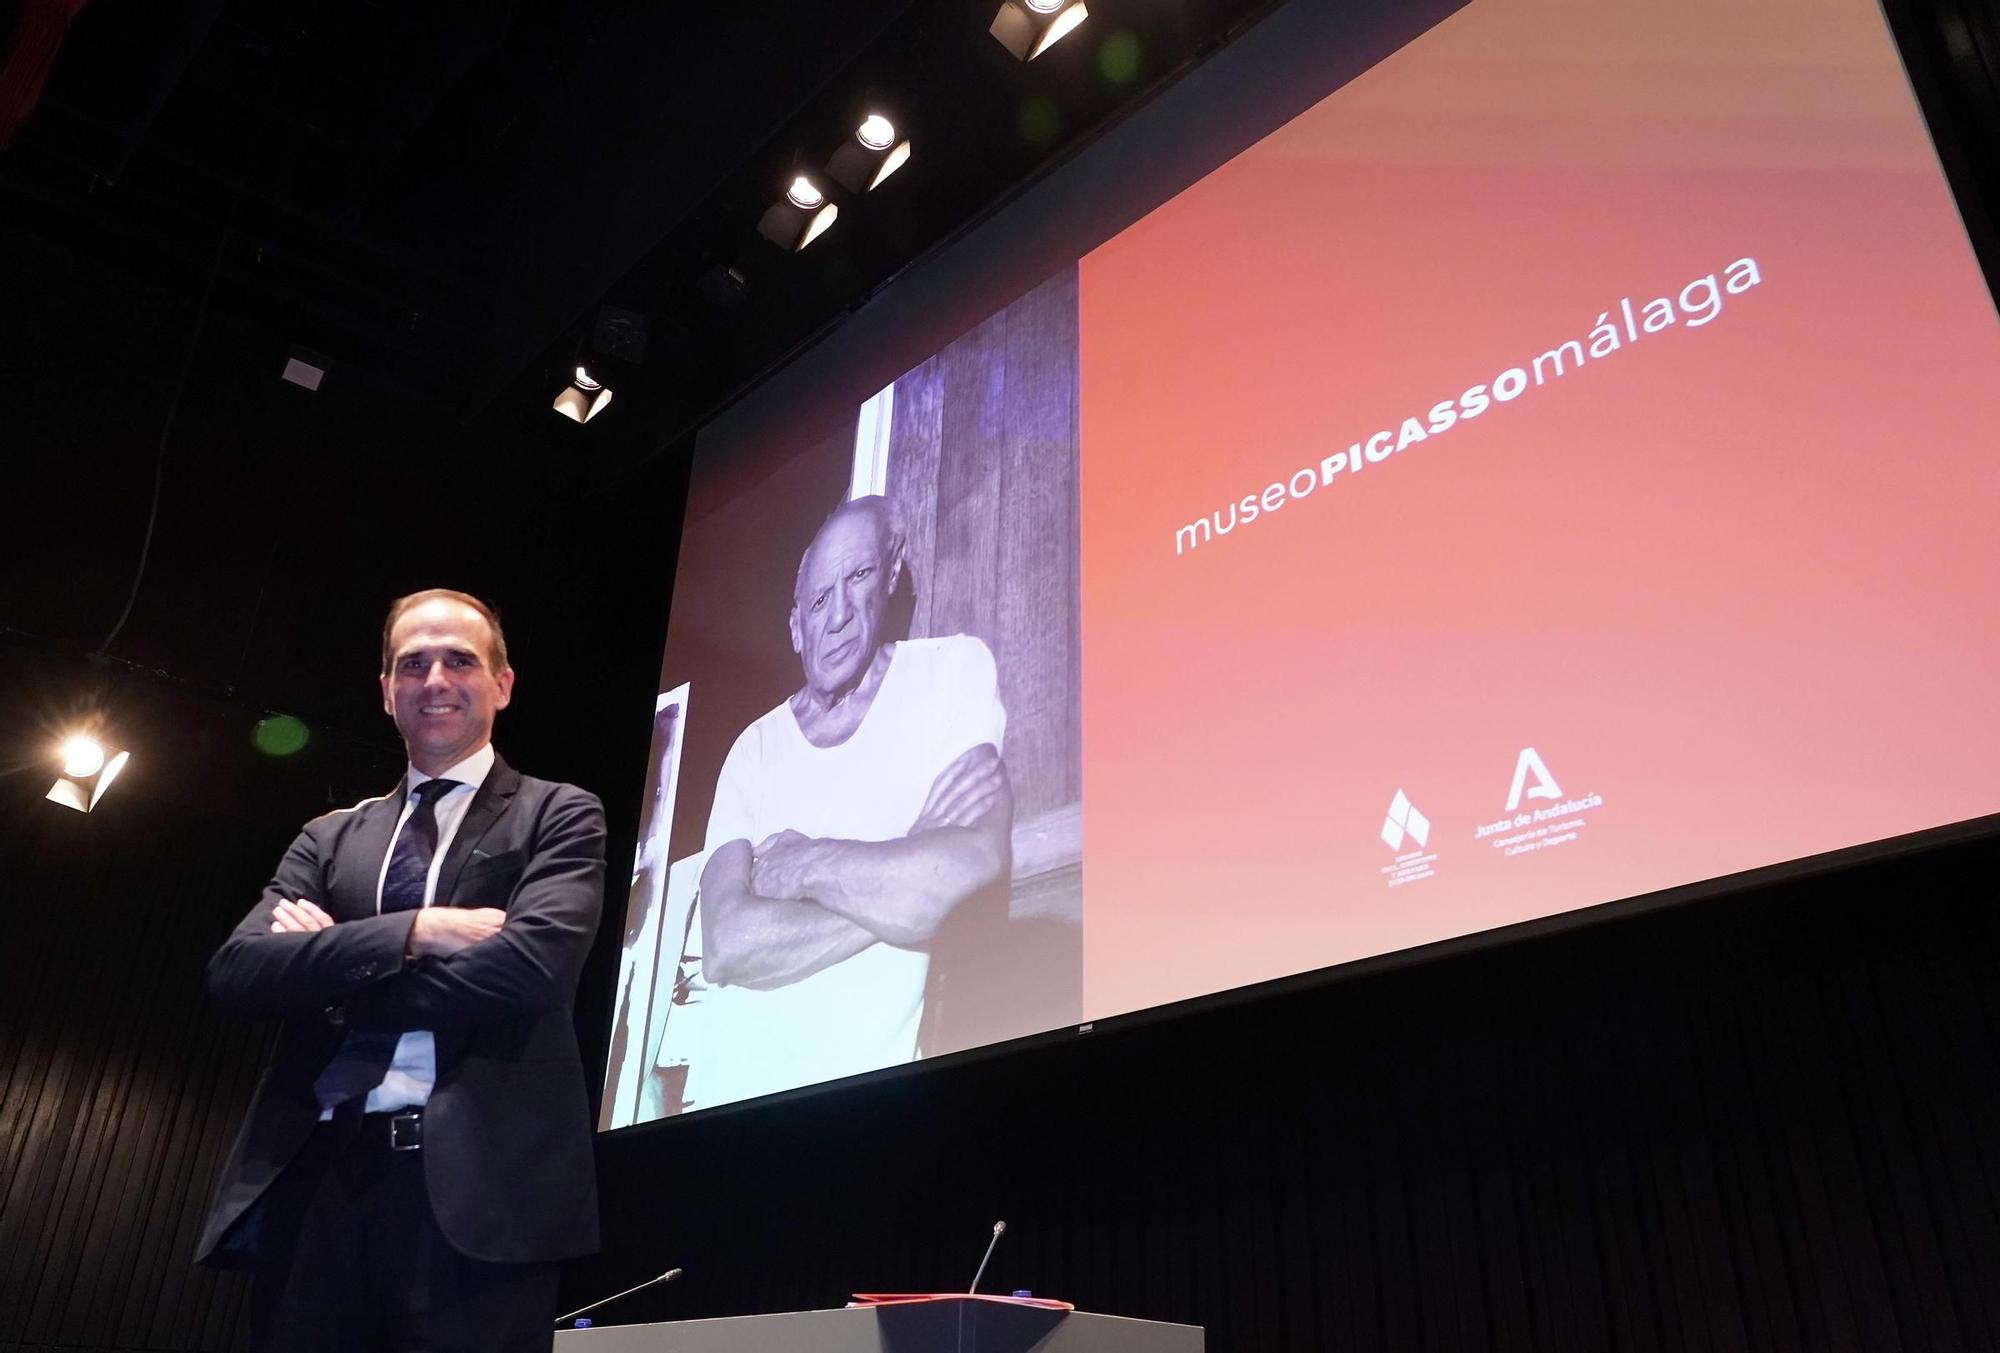 Presentación de Miguel López-Remiro como nuevo director artístico del Museo Picasso Málaga